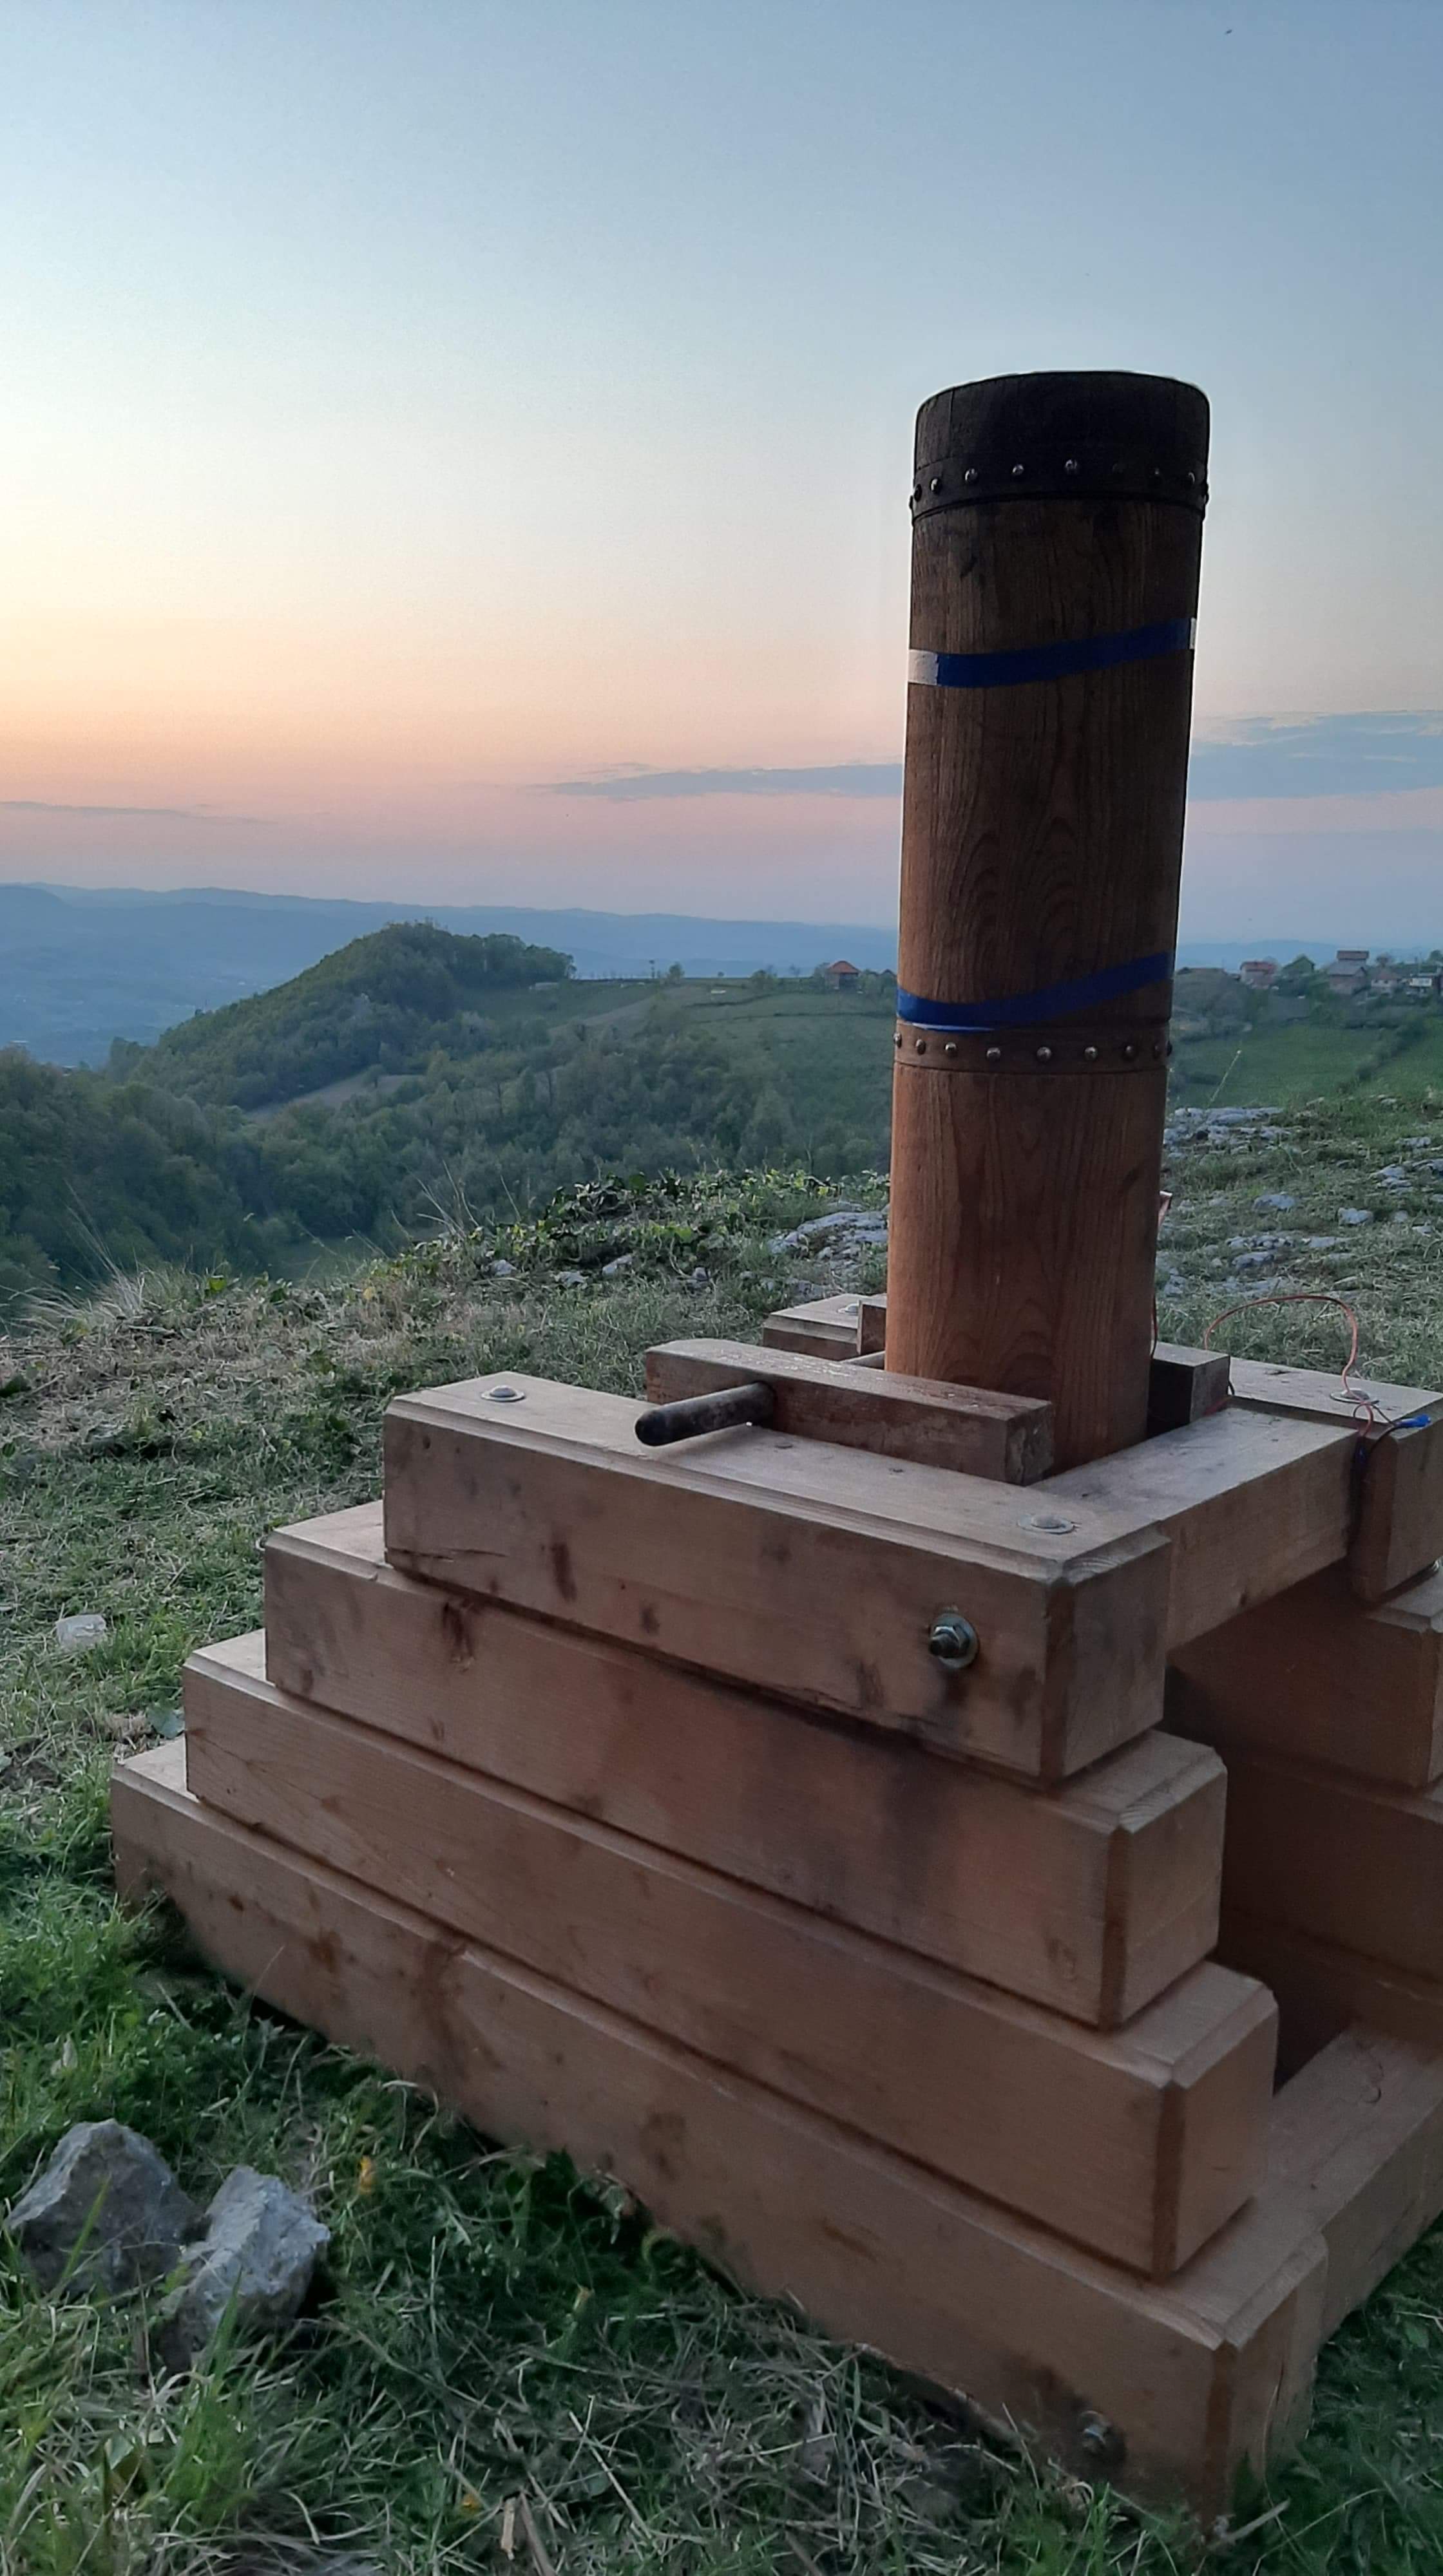 Ramazanski top, Srebrenik - I ove godine pucnjem topa oglašava se vrijeme iftara u Srebreniku